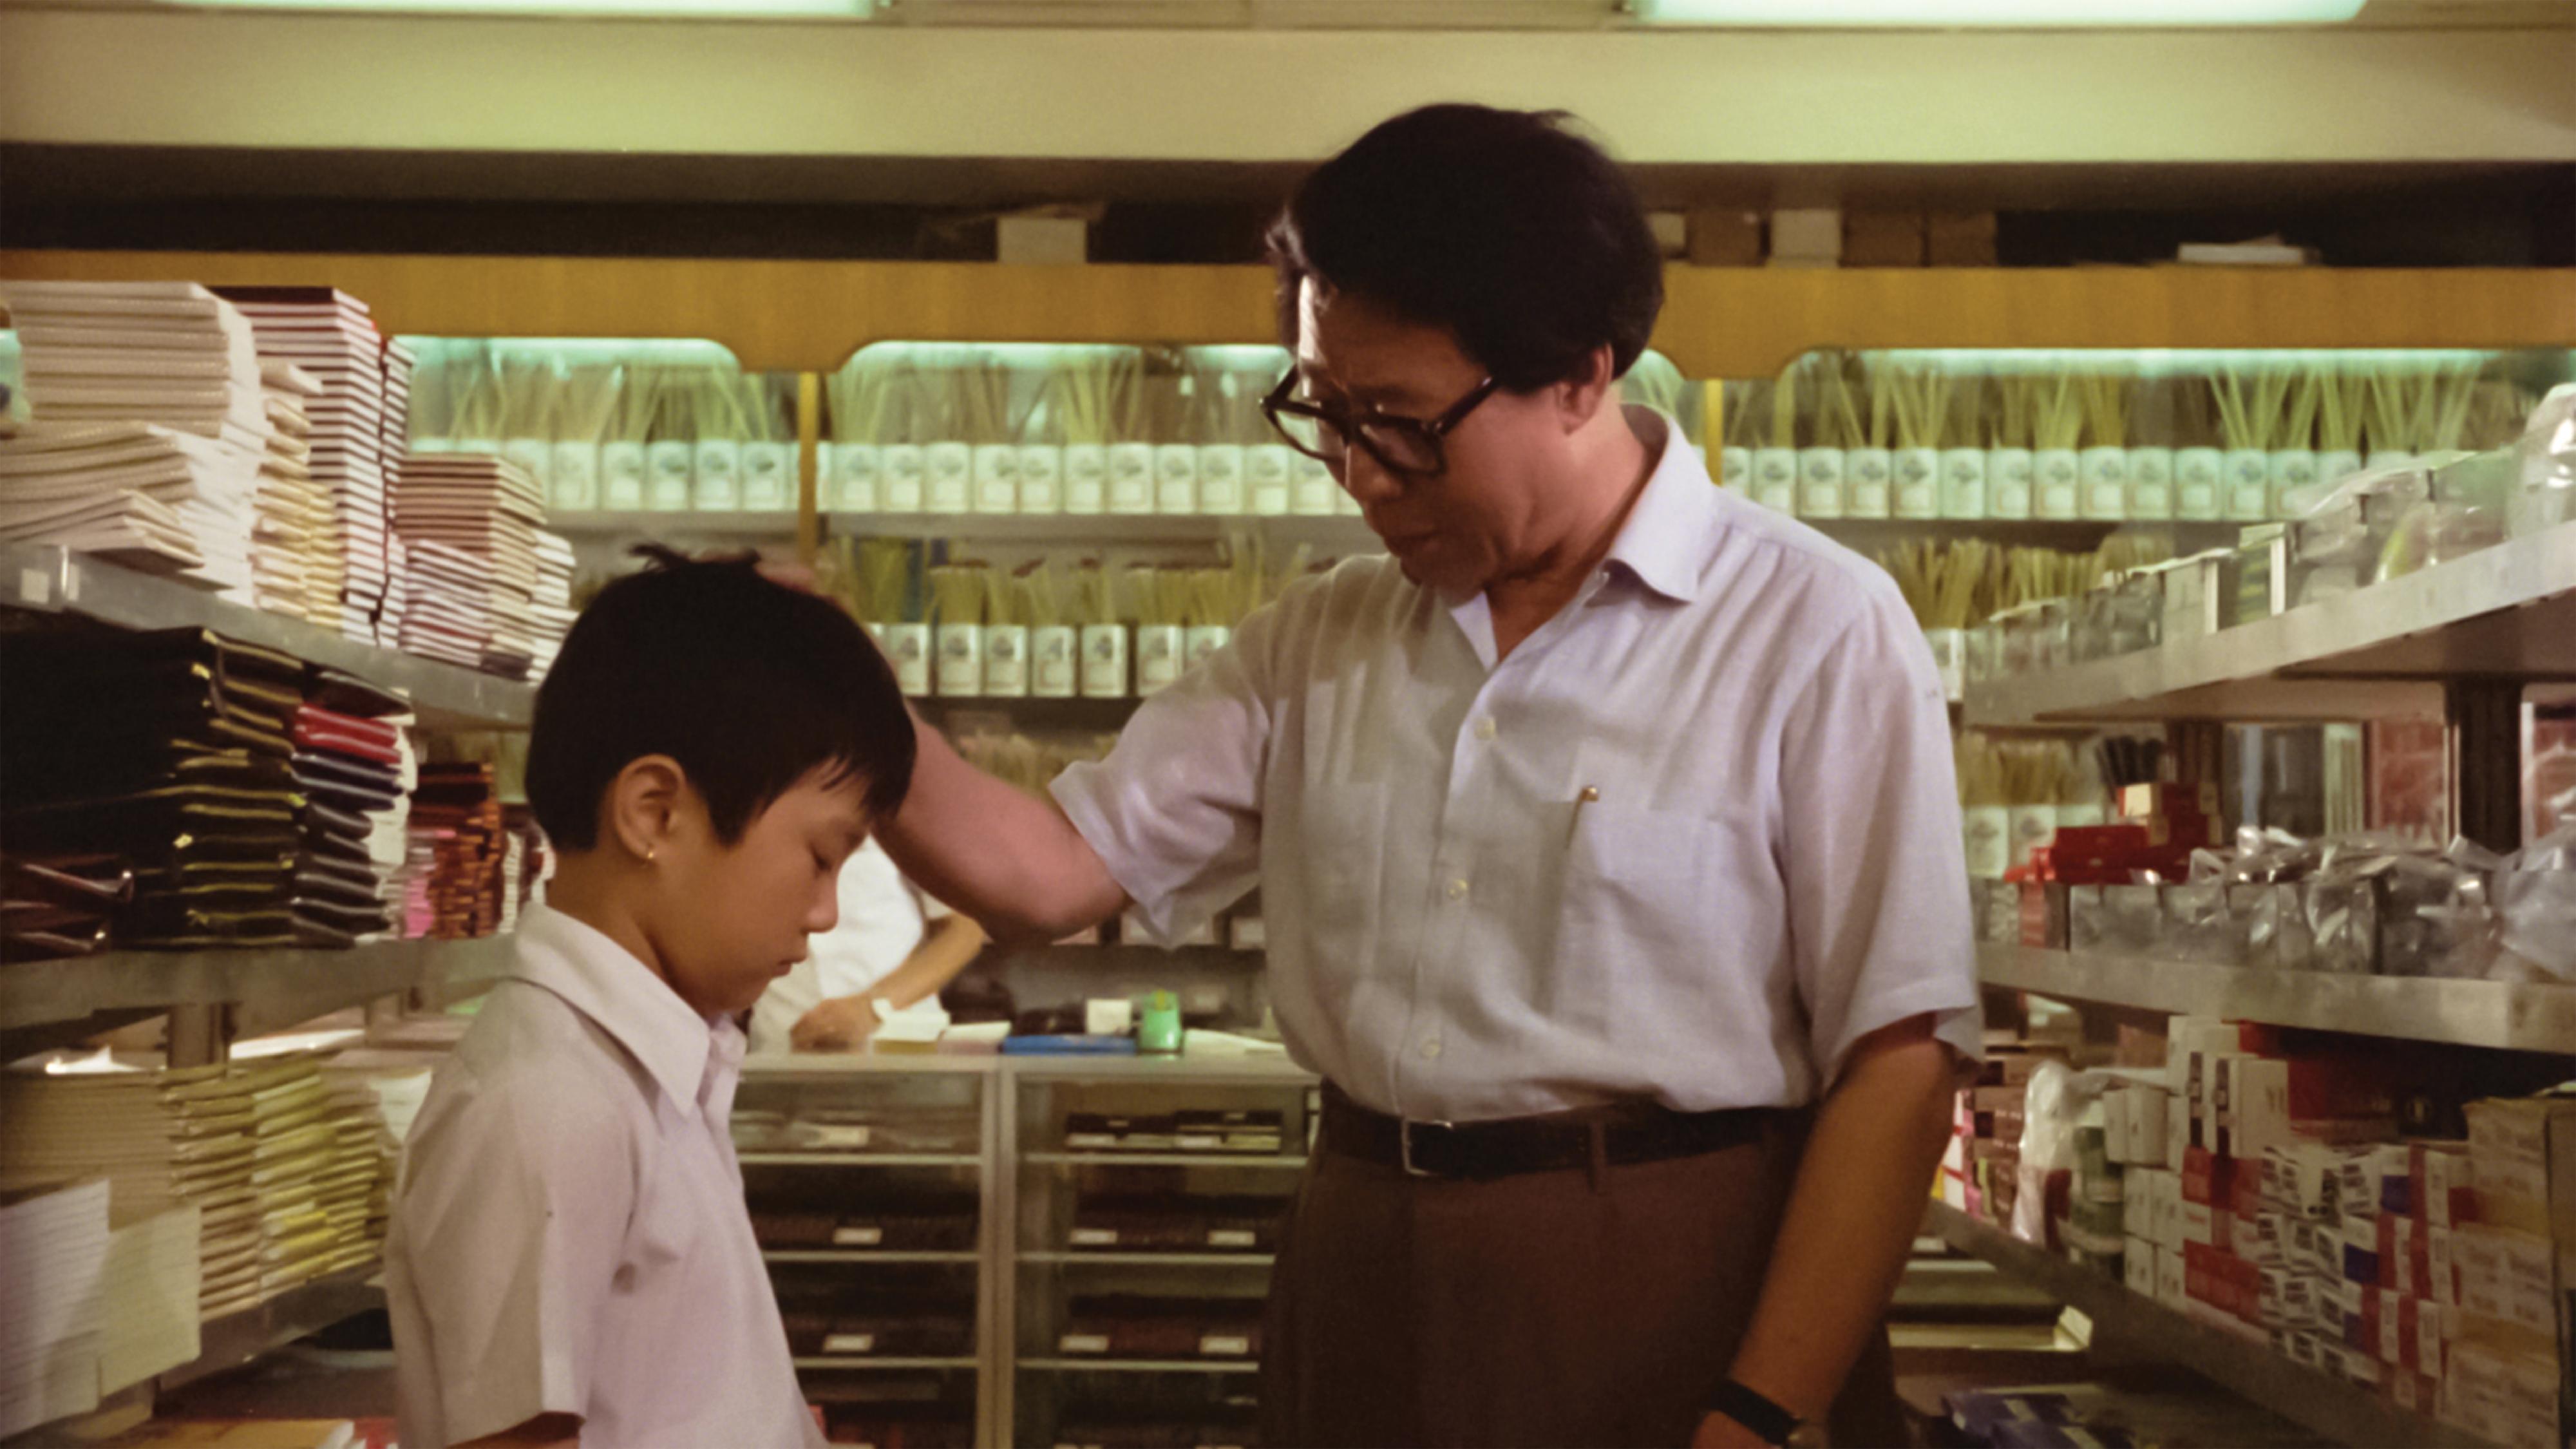 《影以載道——銀都作品回顧》中上映的《父子情》（1981）劇照。